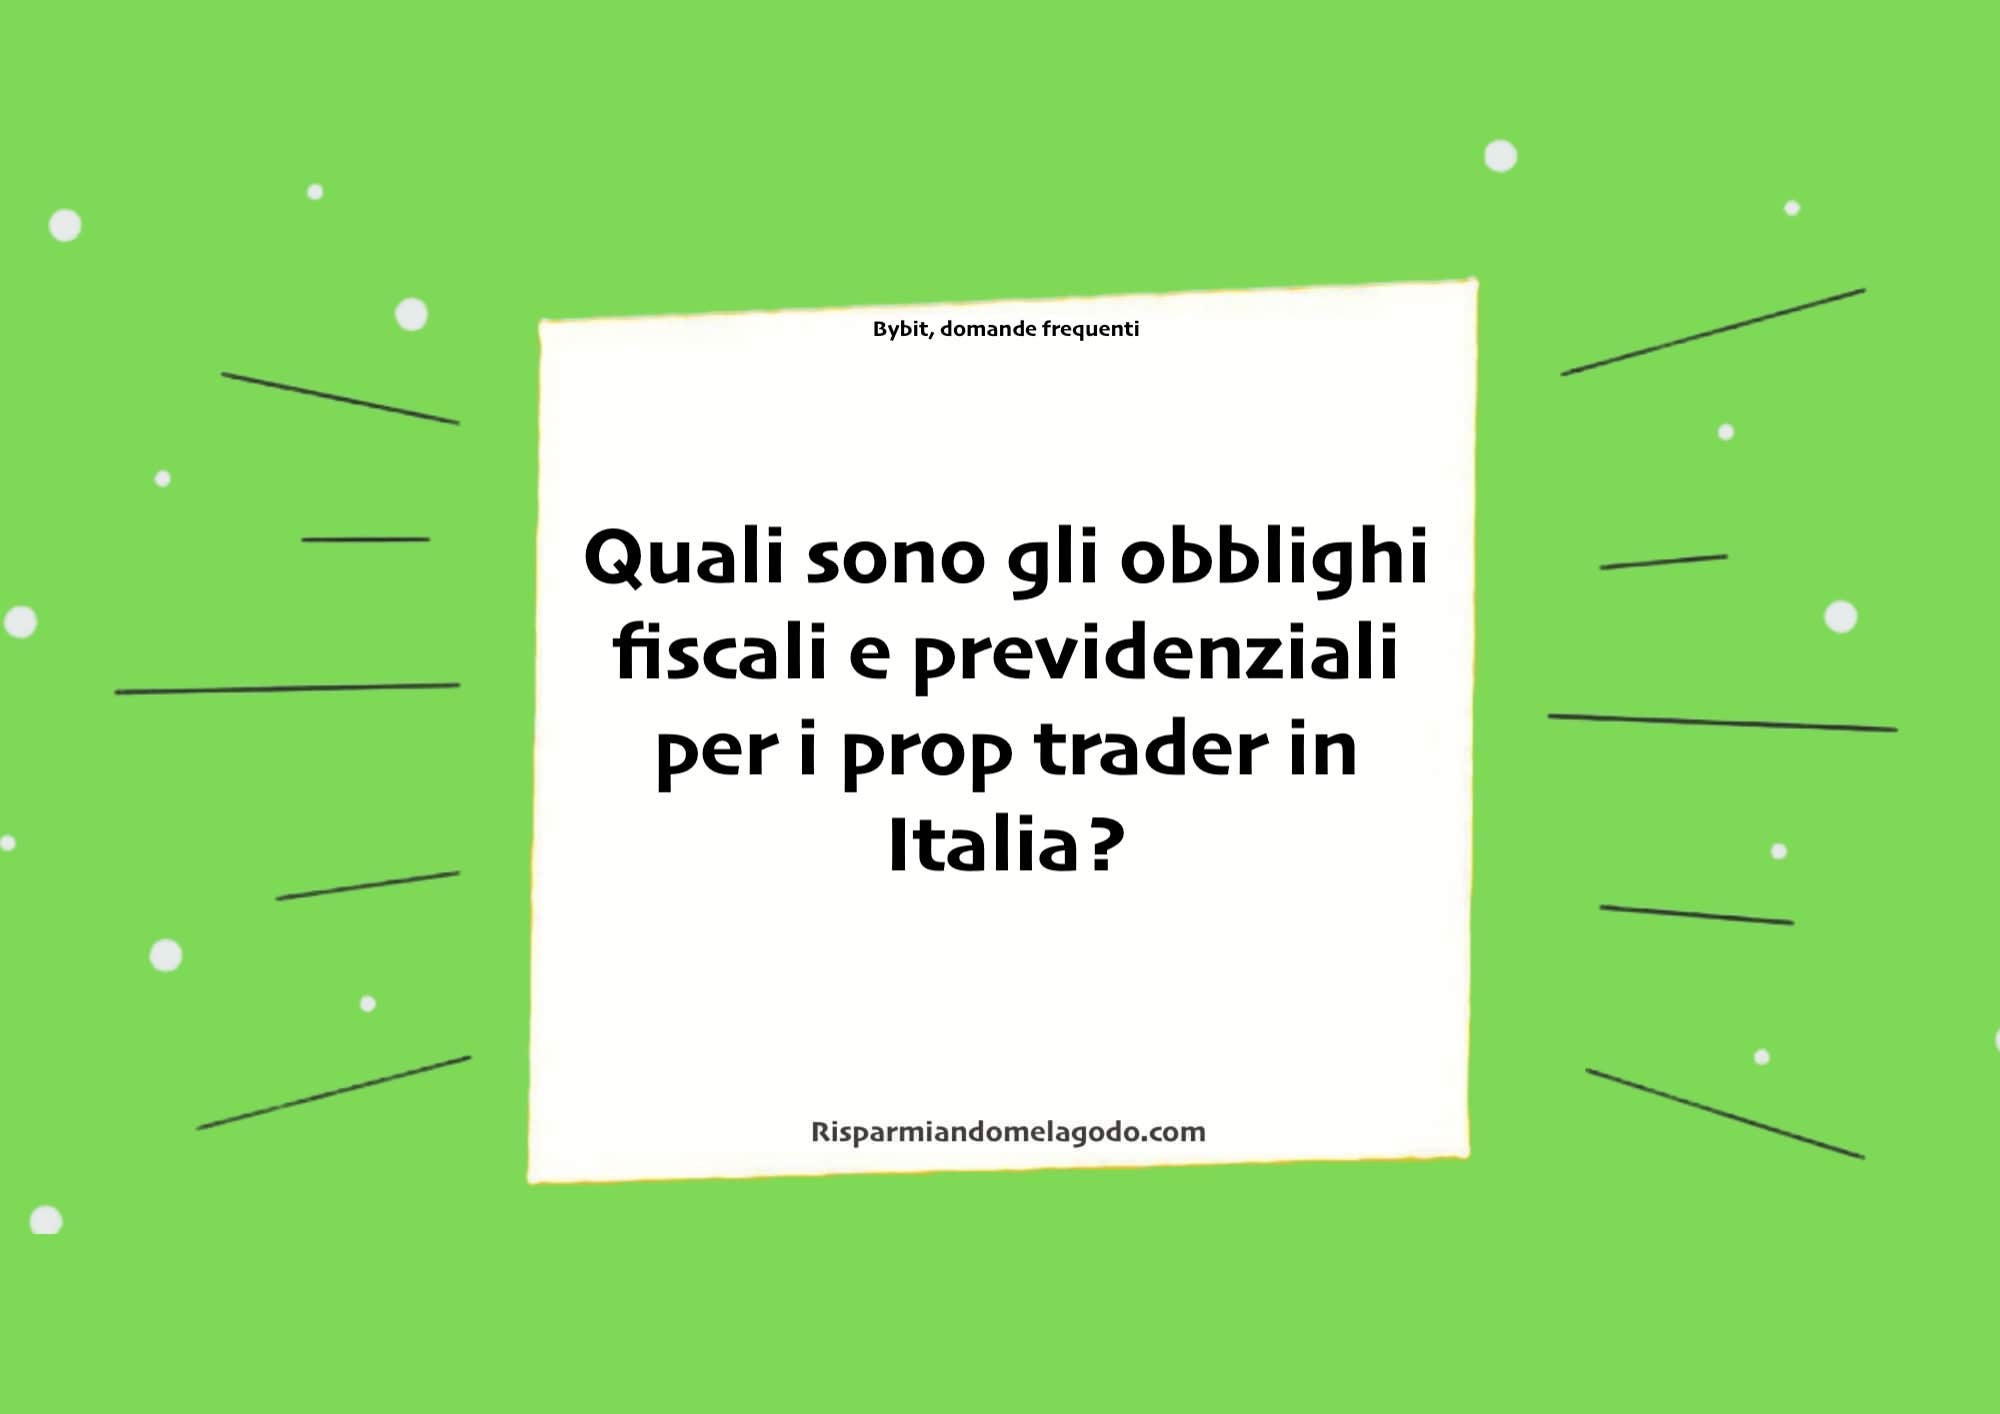 Quali sono gli obblighi fiscali e previdenziali per i prop trader in Italia?